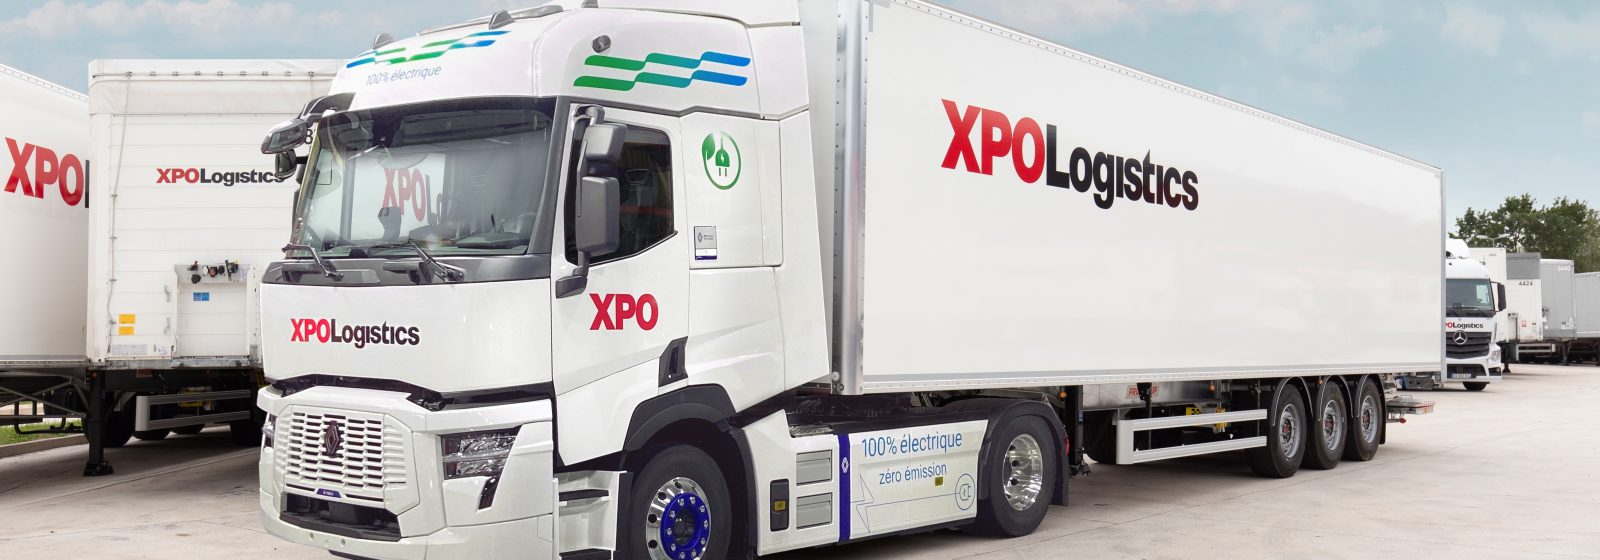 Elektrische vrachtwagen Renault Trucks van XPO Logistics